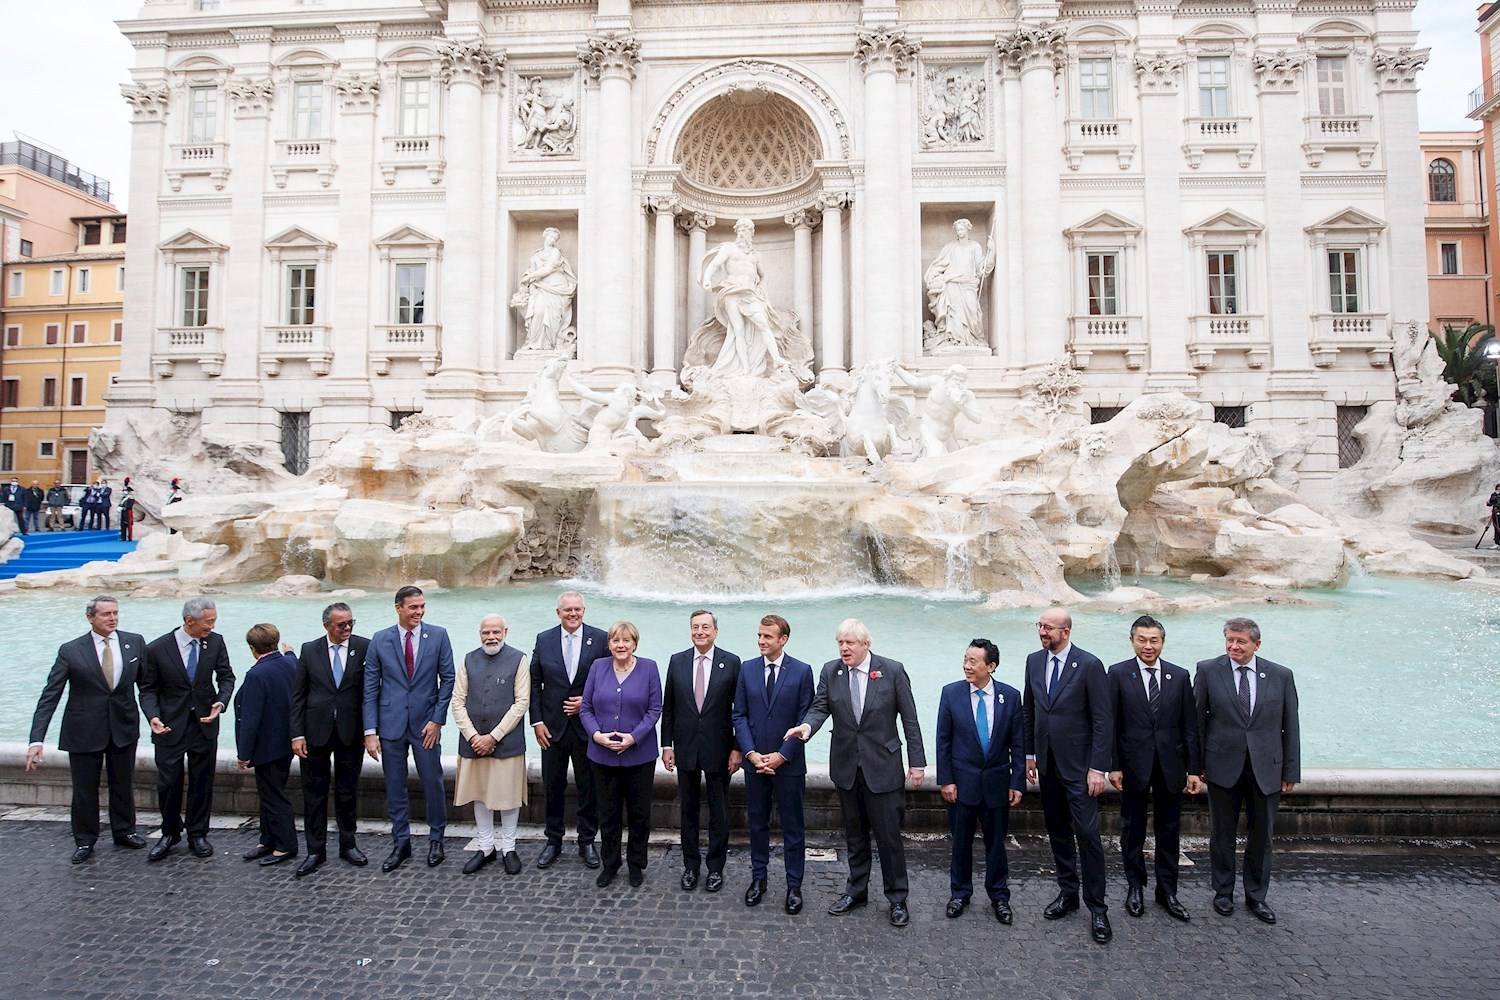 Merkel participa de encontro com líderes durante a realização da cúpula do G20, na Itália